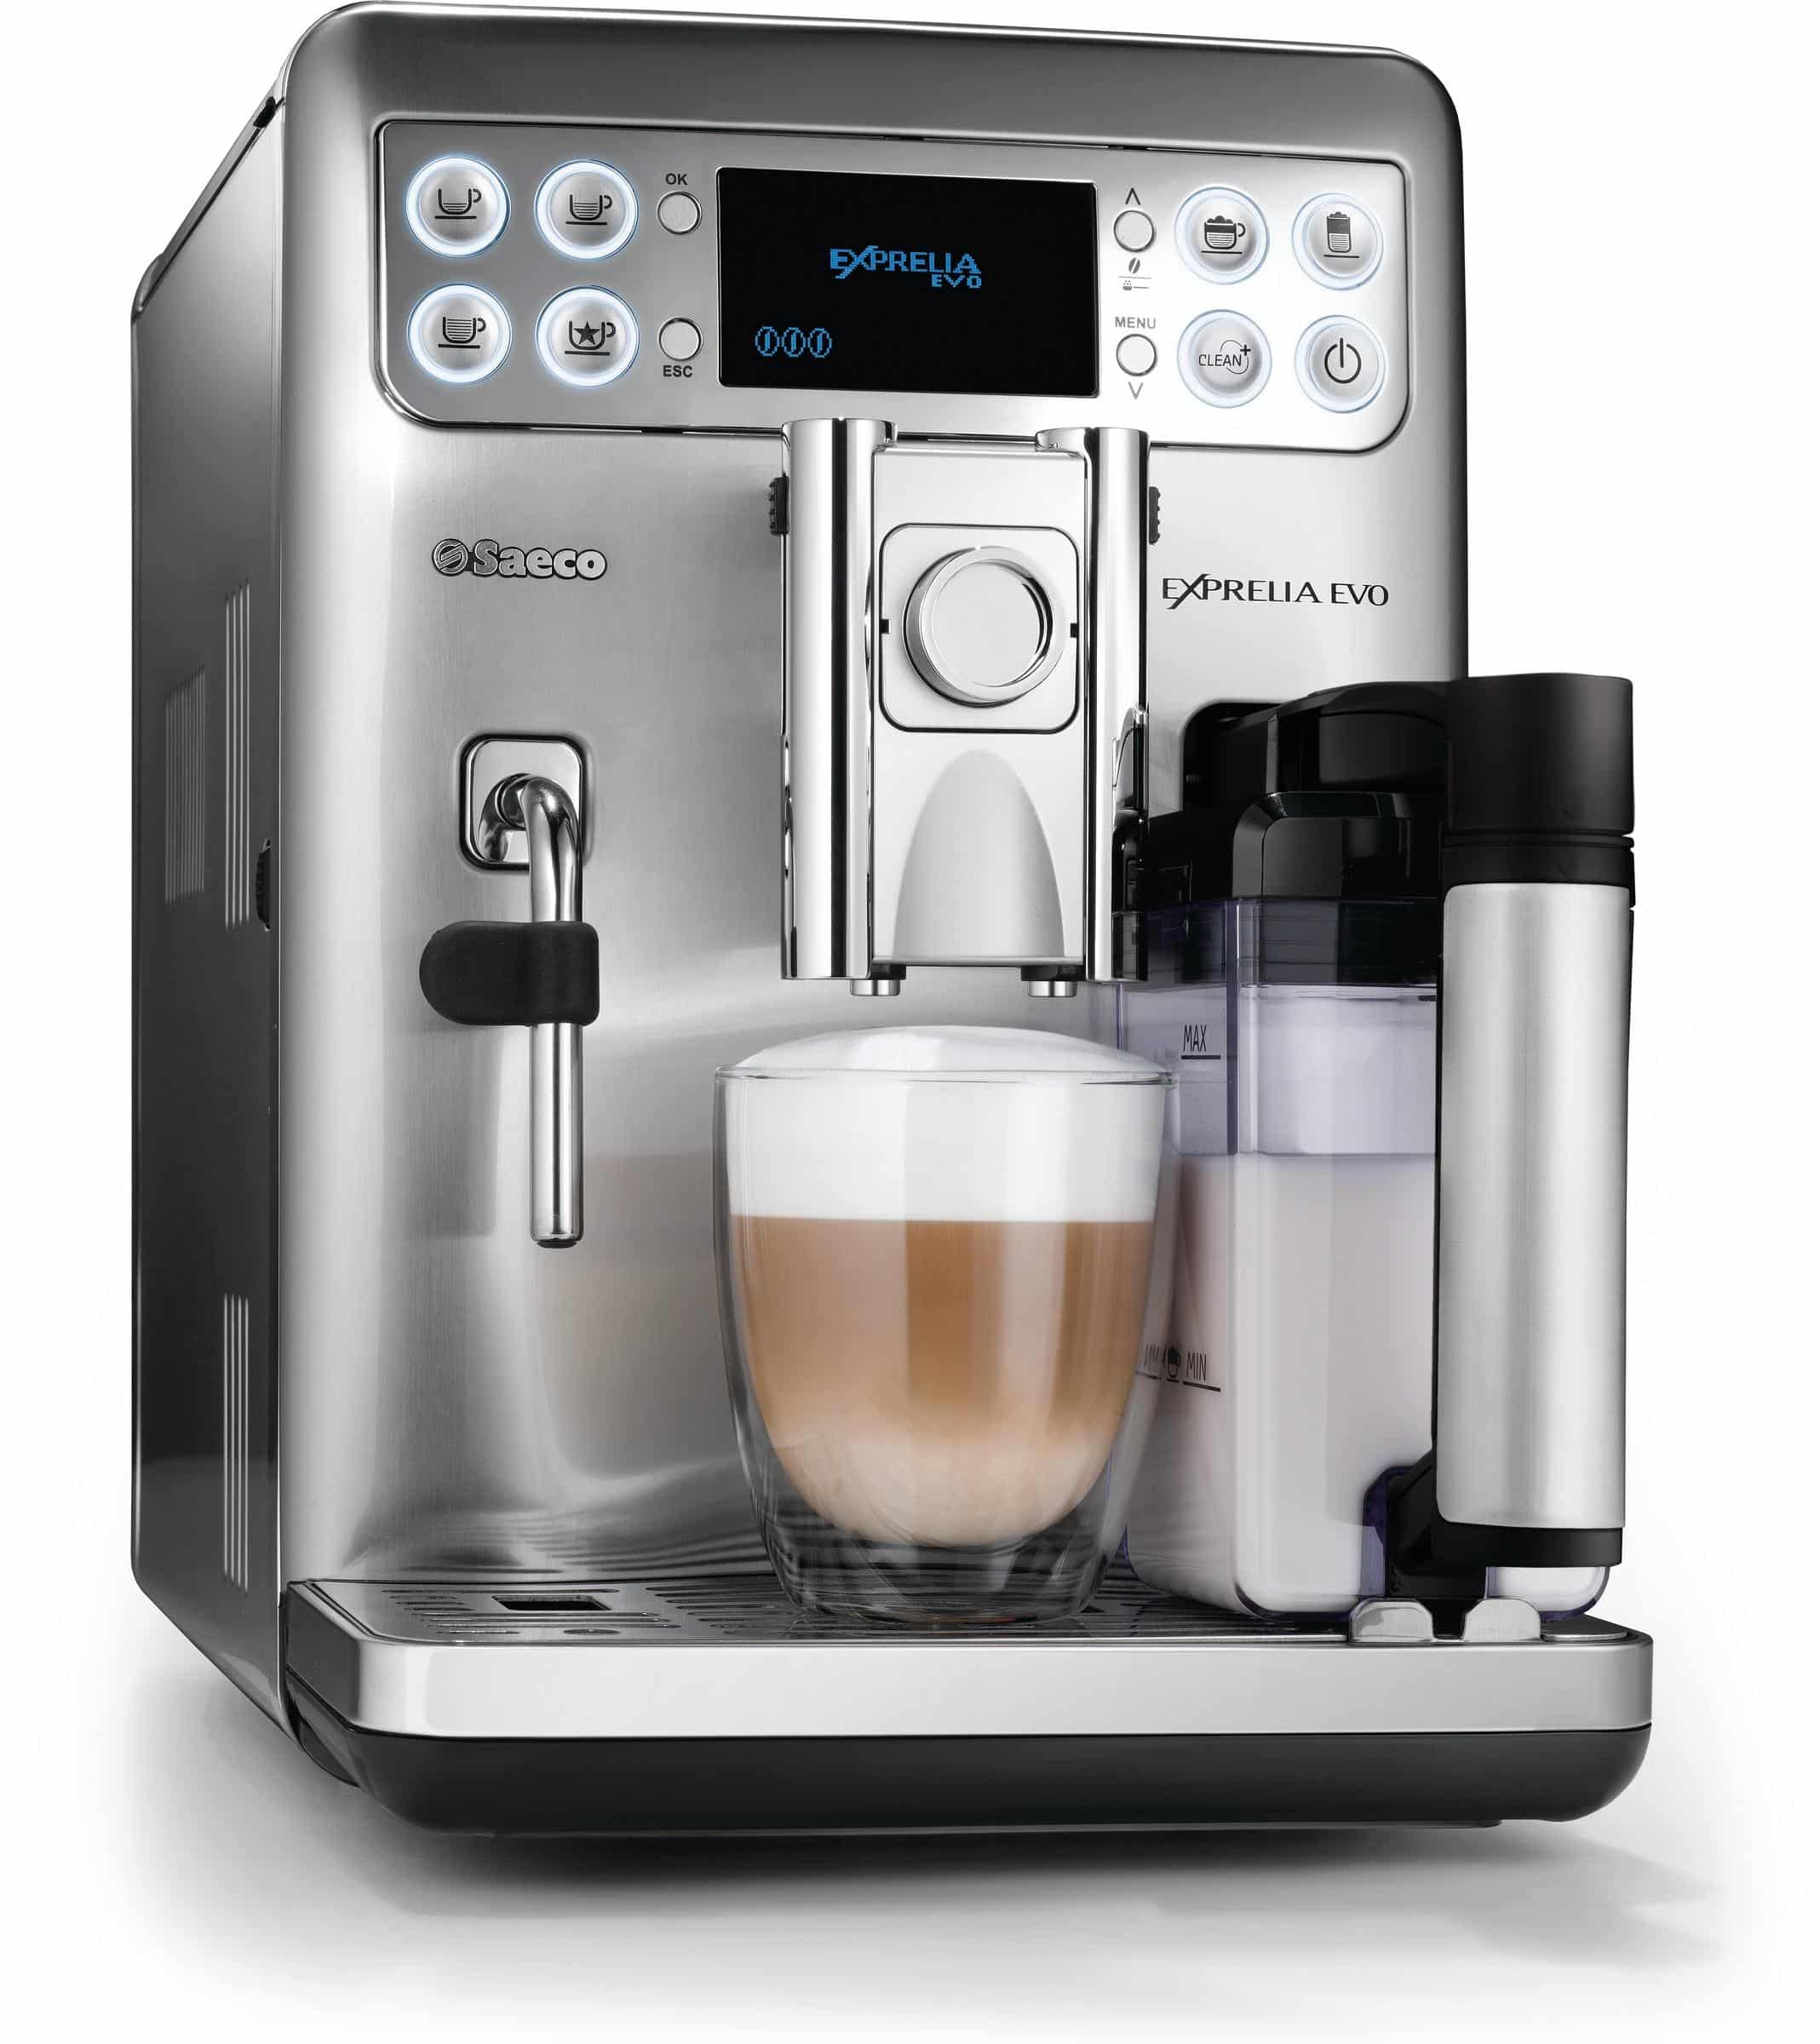 SAECO Exprellia, Automatic Espresso Machine, Coffee, Espresso maker